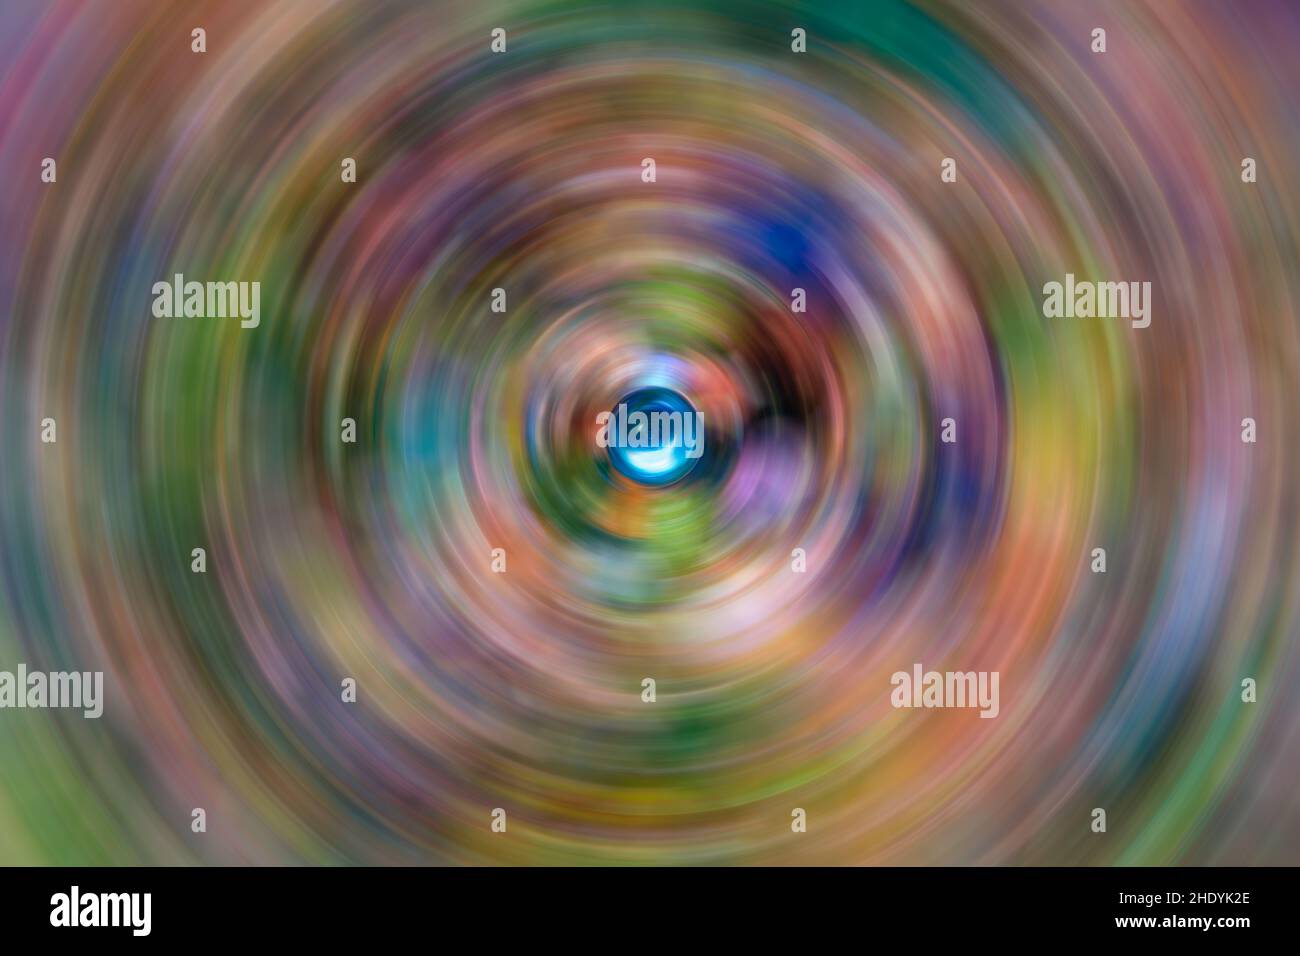 Immagine di sfondo a colori astratti con marmi sfocati a spirale soft focus Foto Stock